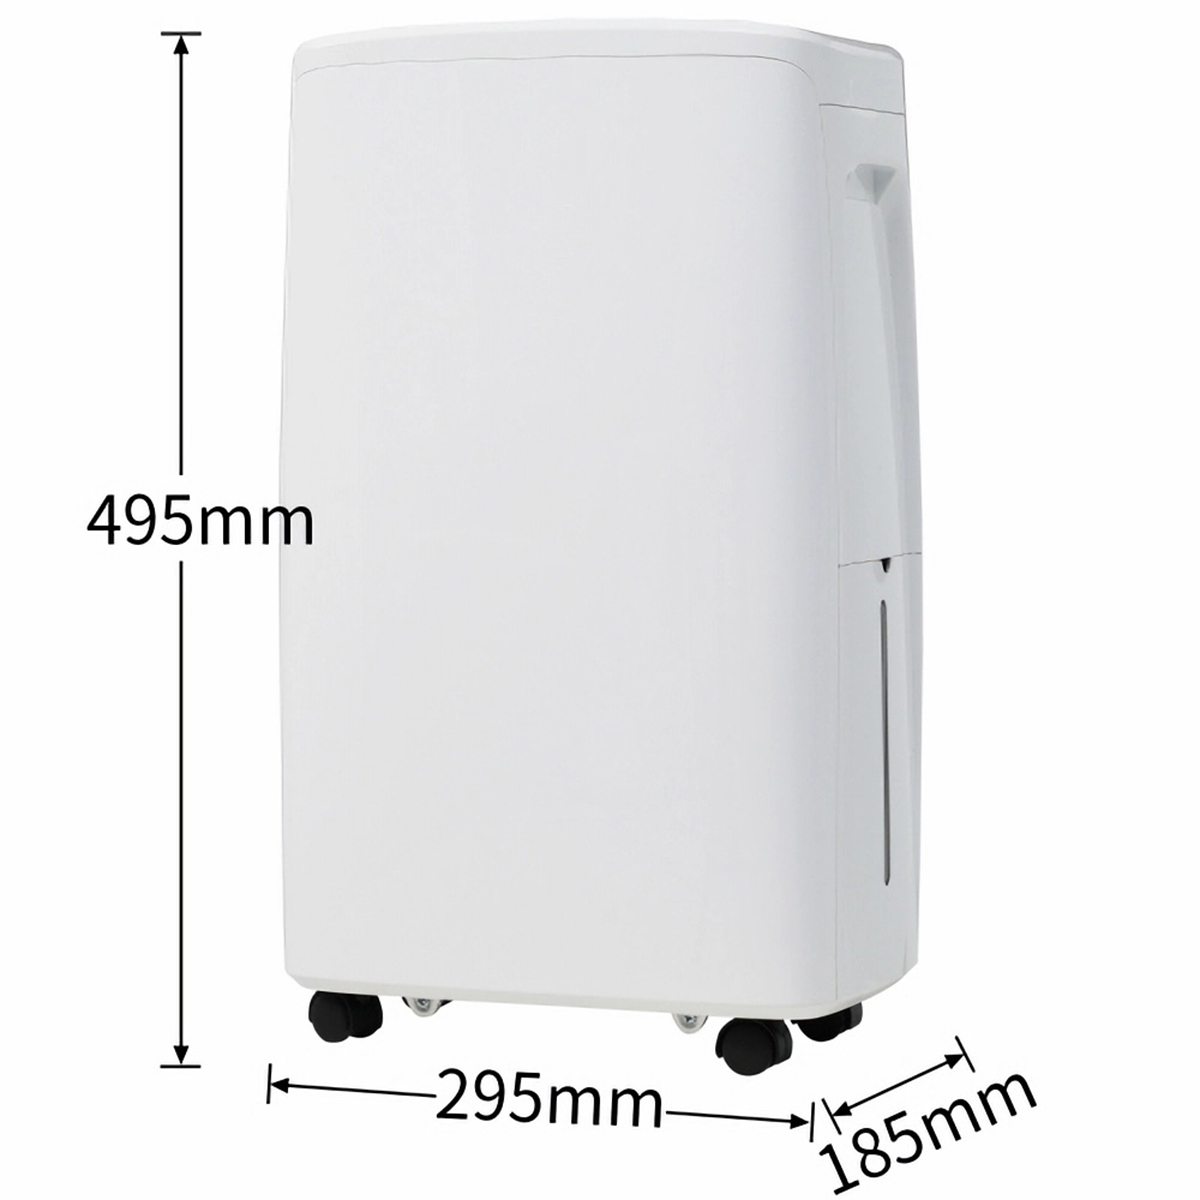 m²) BRIGHTAKE 15 LED-Bildschirm. Weiß, 1,5-Liter-Wassertank, Trockner, 3-in-1-Luftentfeuchter, Luftreiniger, Luftentfeuchter Raumgröße: